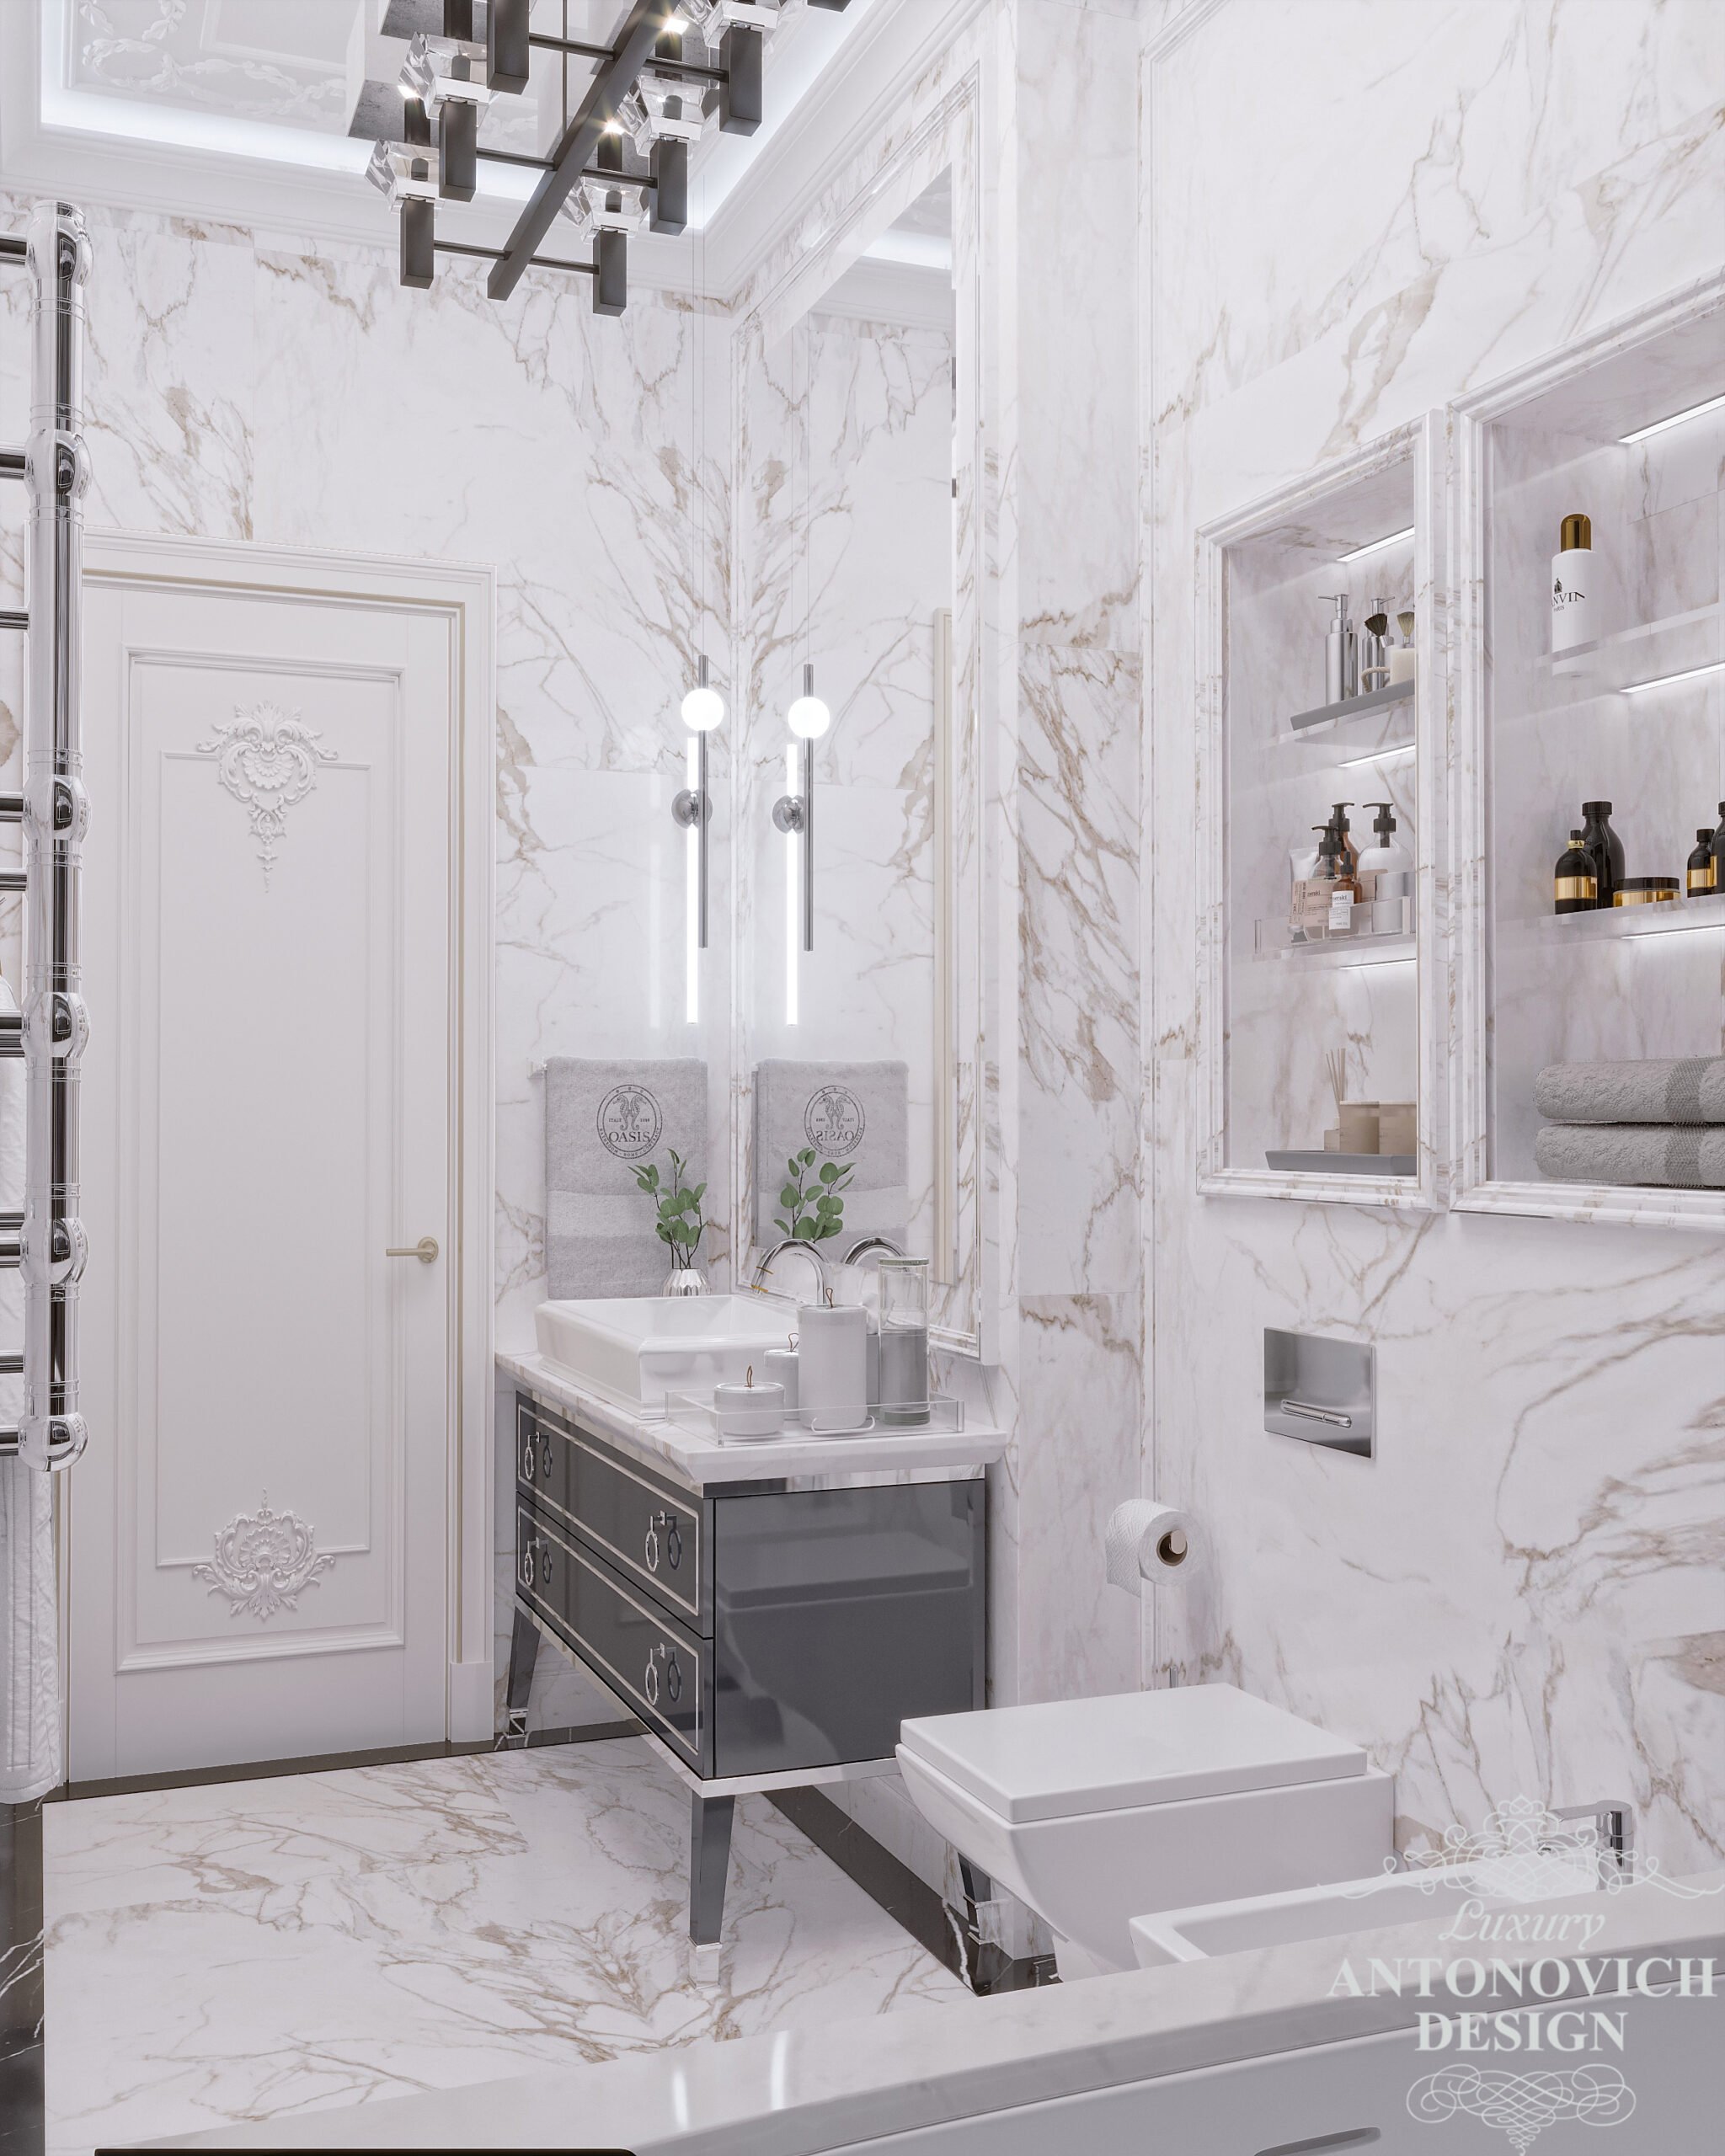 Глянцевые стеклянные поверхности и современные стильные светильники в авторском дизайн-проекте интерьера ванной в проекте современной квартиры